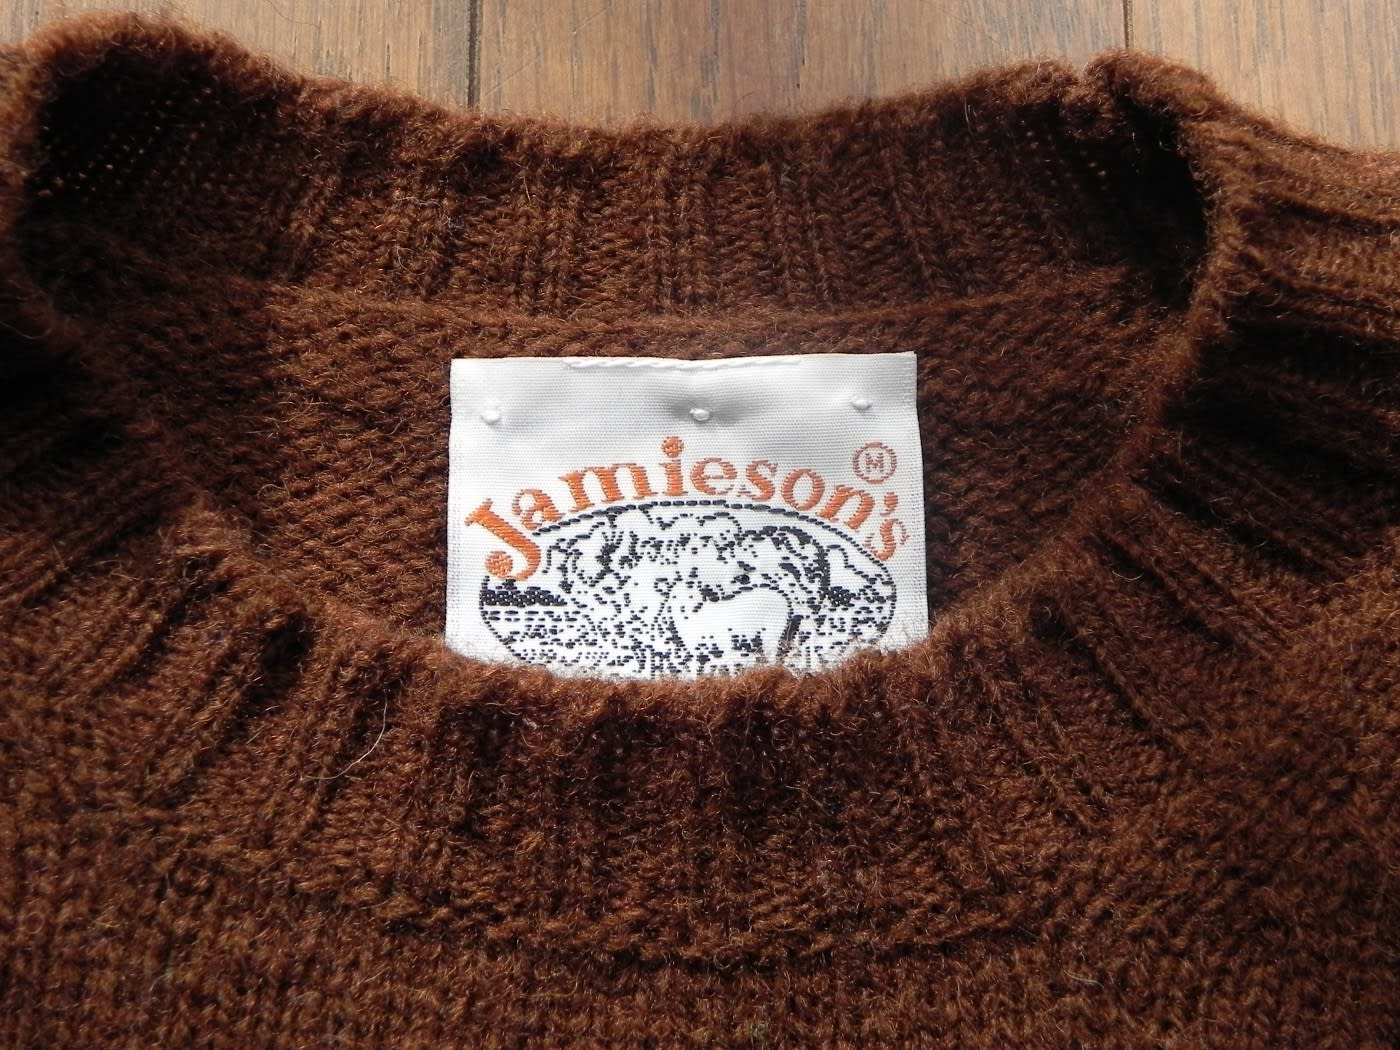 Jamieson's シェトランドウール クルーニットセーター - お買いモノ考